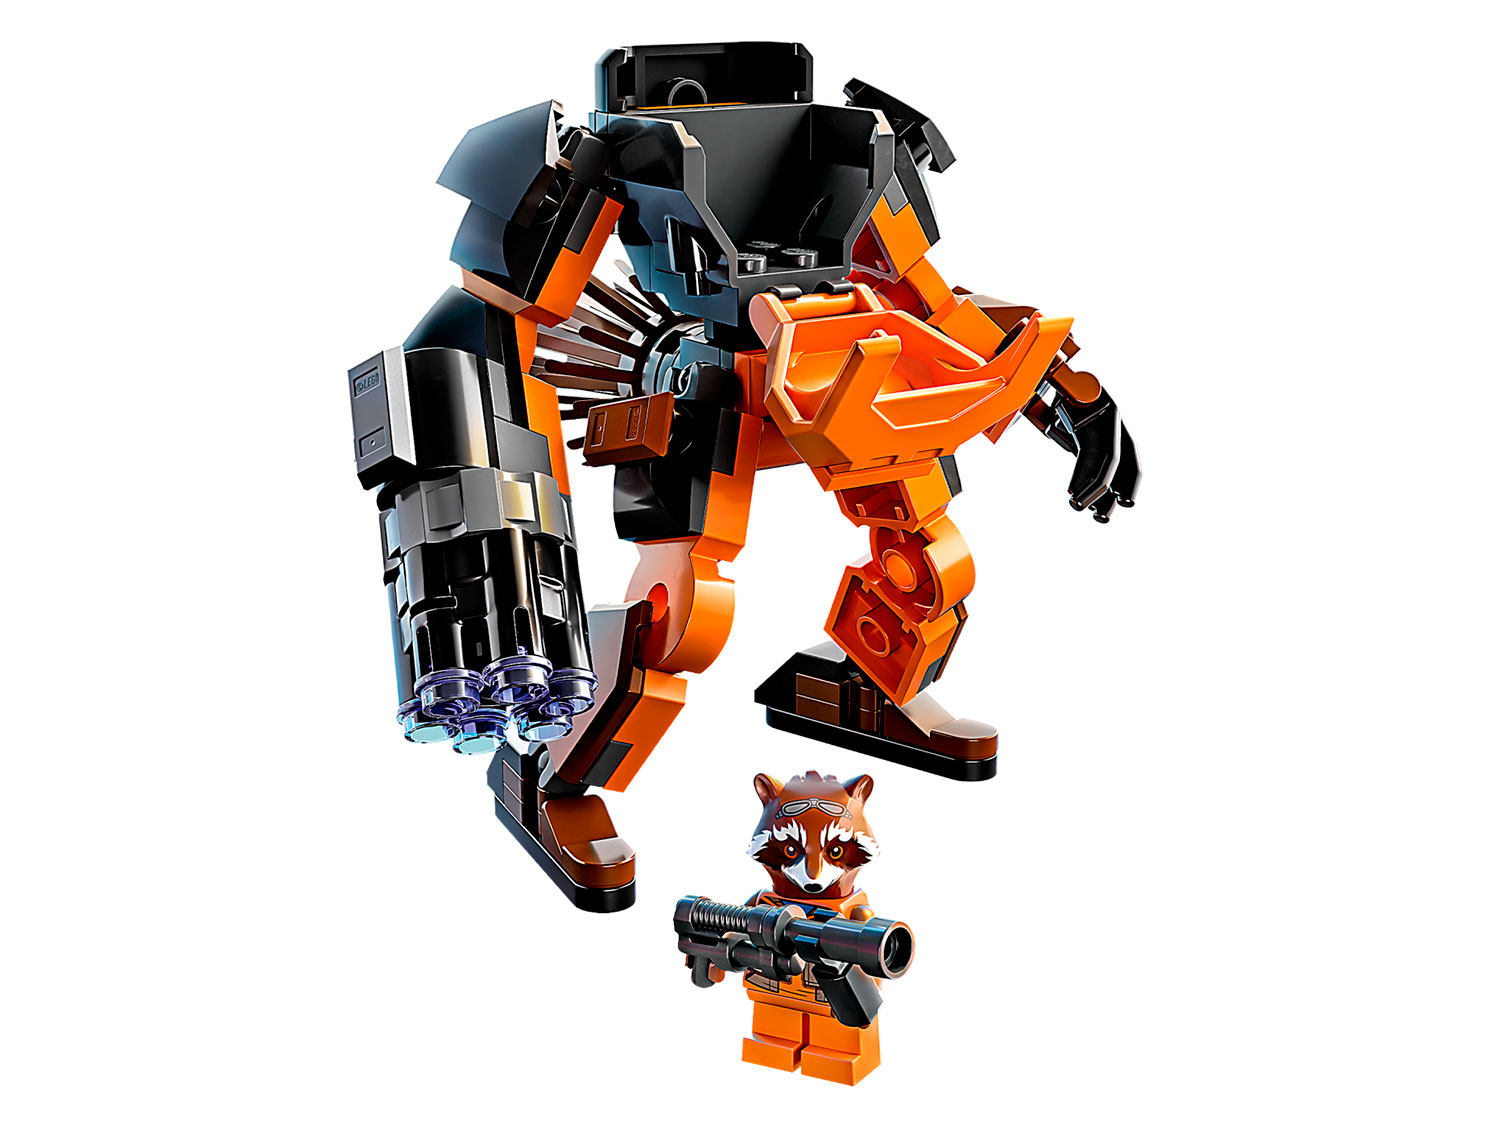 Конструктор LEGO Marvel Avengers Rocket mech armor Ракета:робот, 76243 конструктор lego marvel avengers movie 4 76186 корабль чёрной пантеры дракон 202 детали